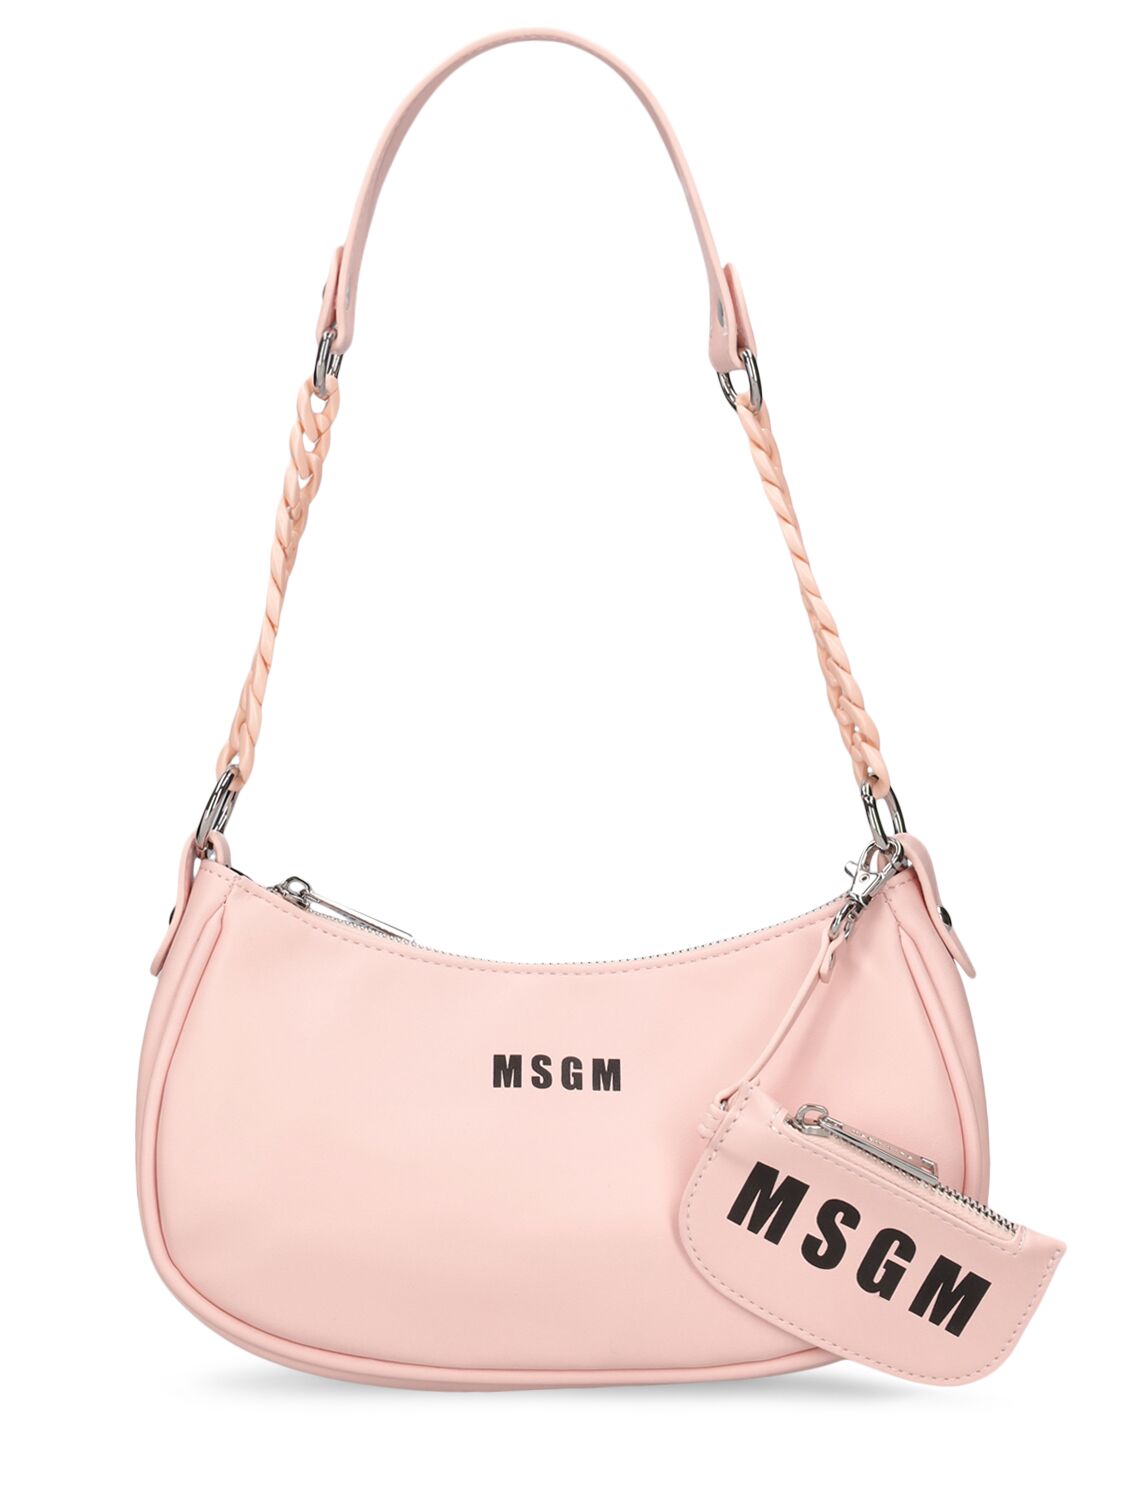 Msgm Kids' Faux Leather Shoulder Bag In 핑크